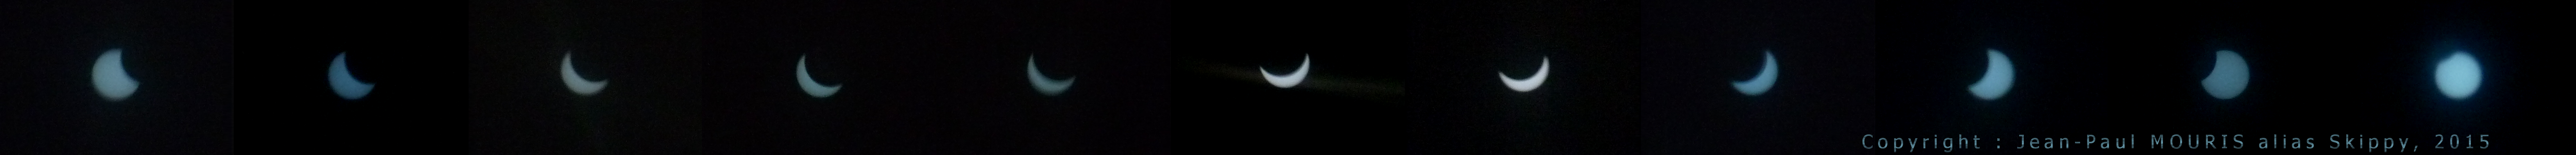 Eclipse solaire partielle 2015-03-20